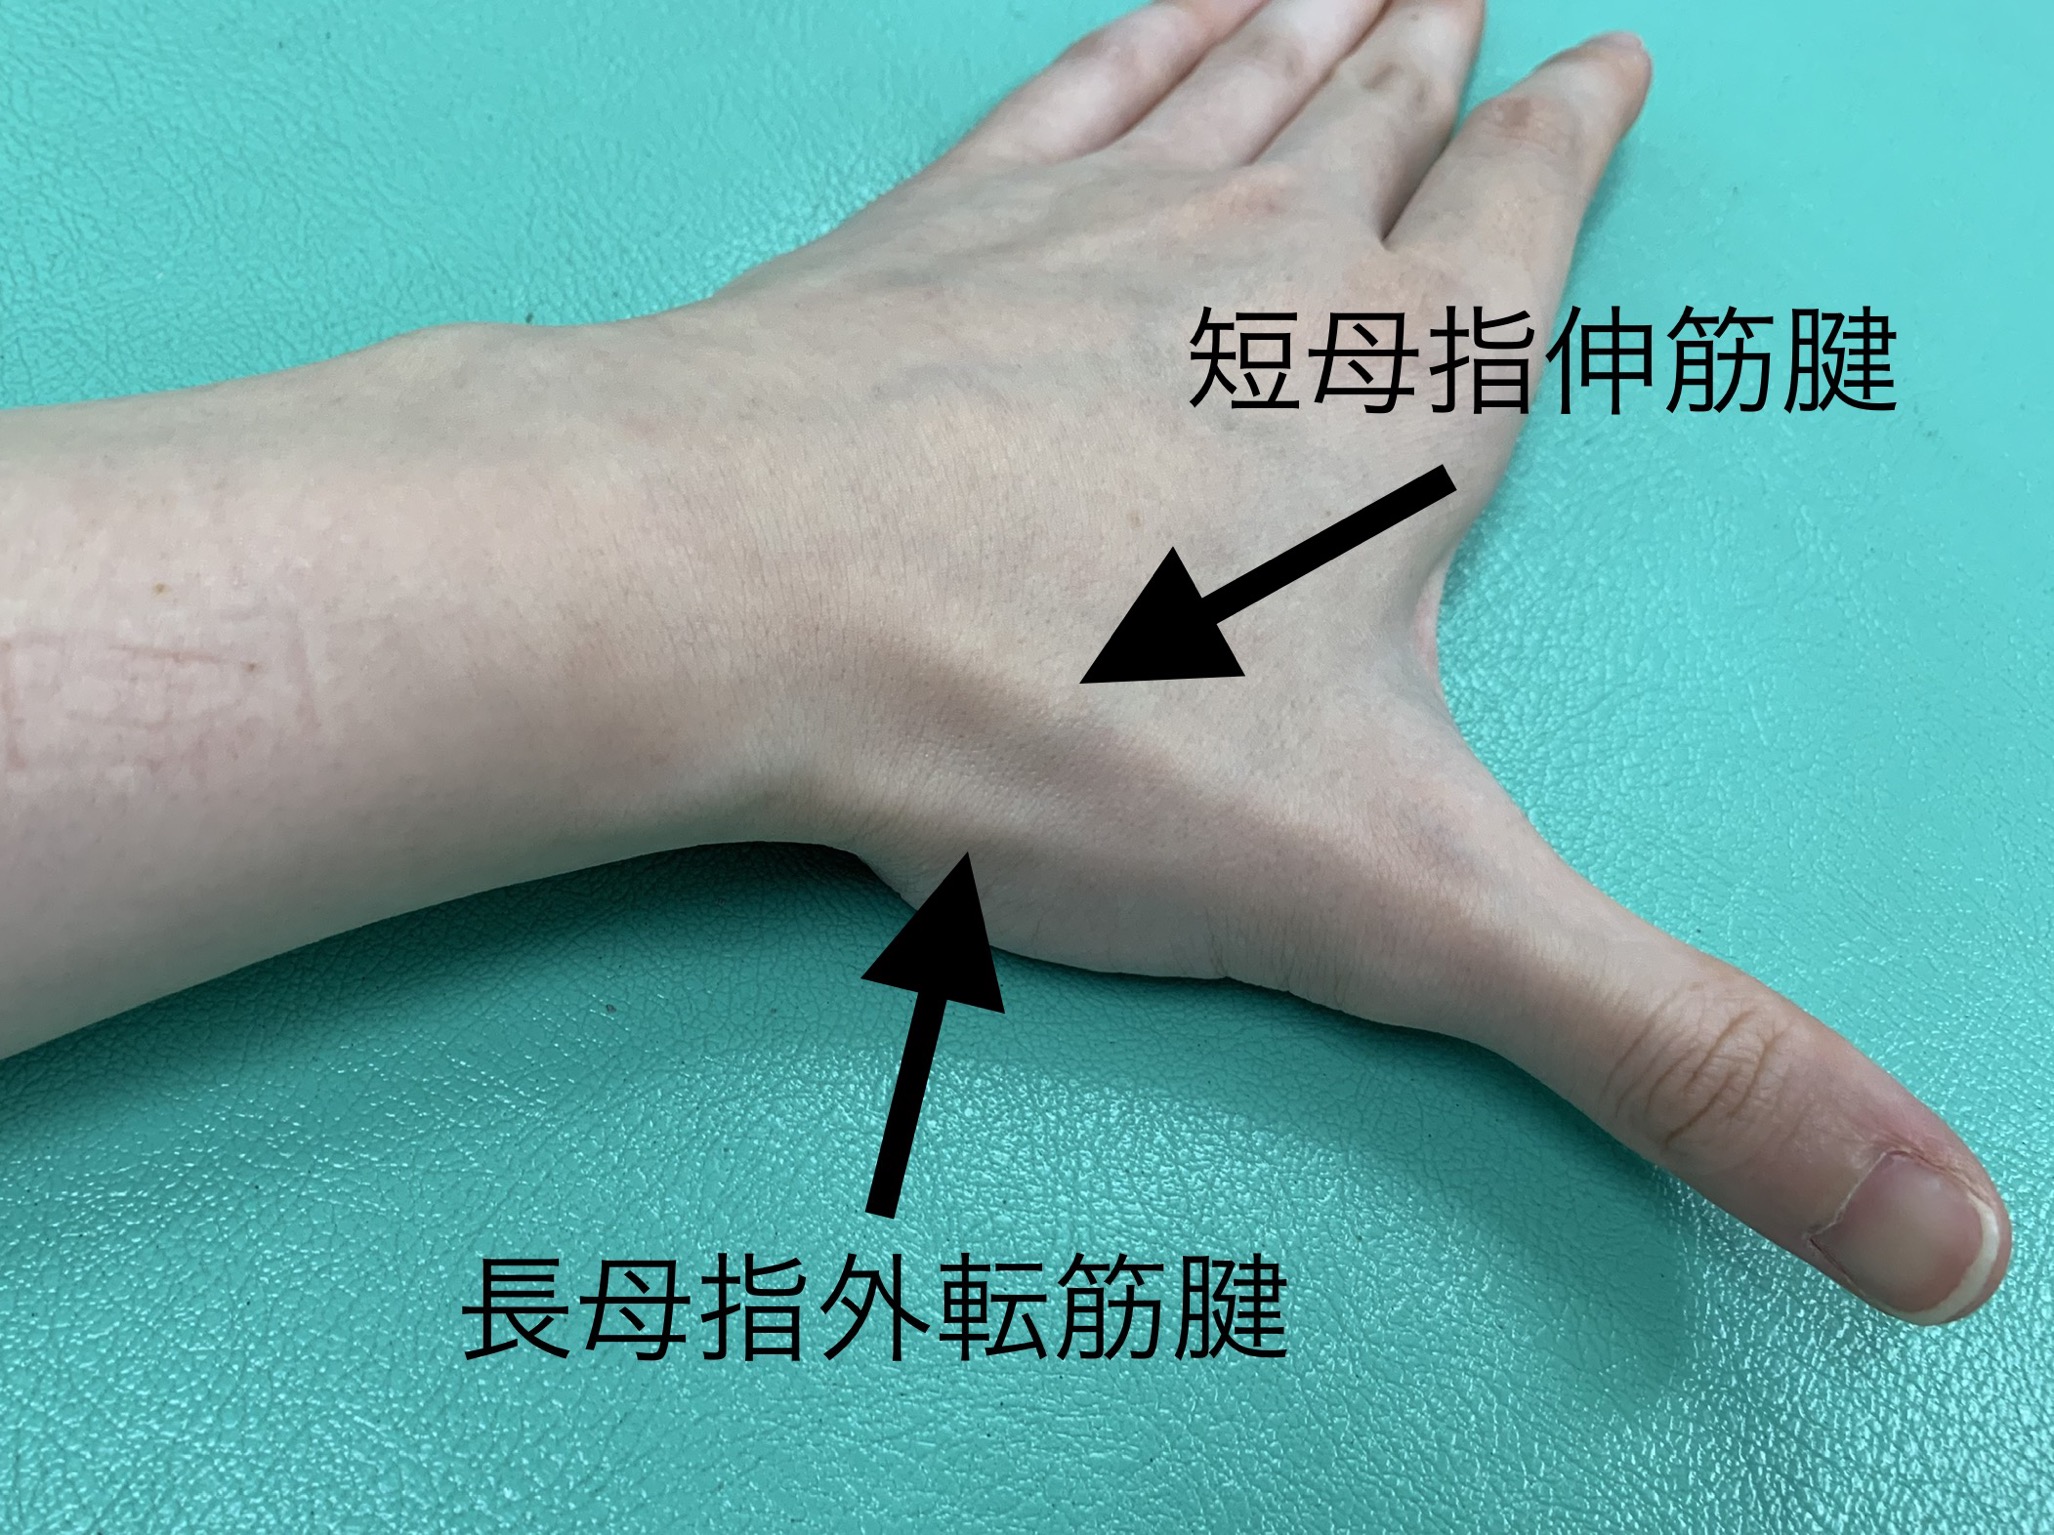 ドケルバン病 親指の狭窄性腱鞘炎 さつきが丘接骨院